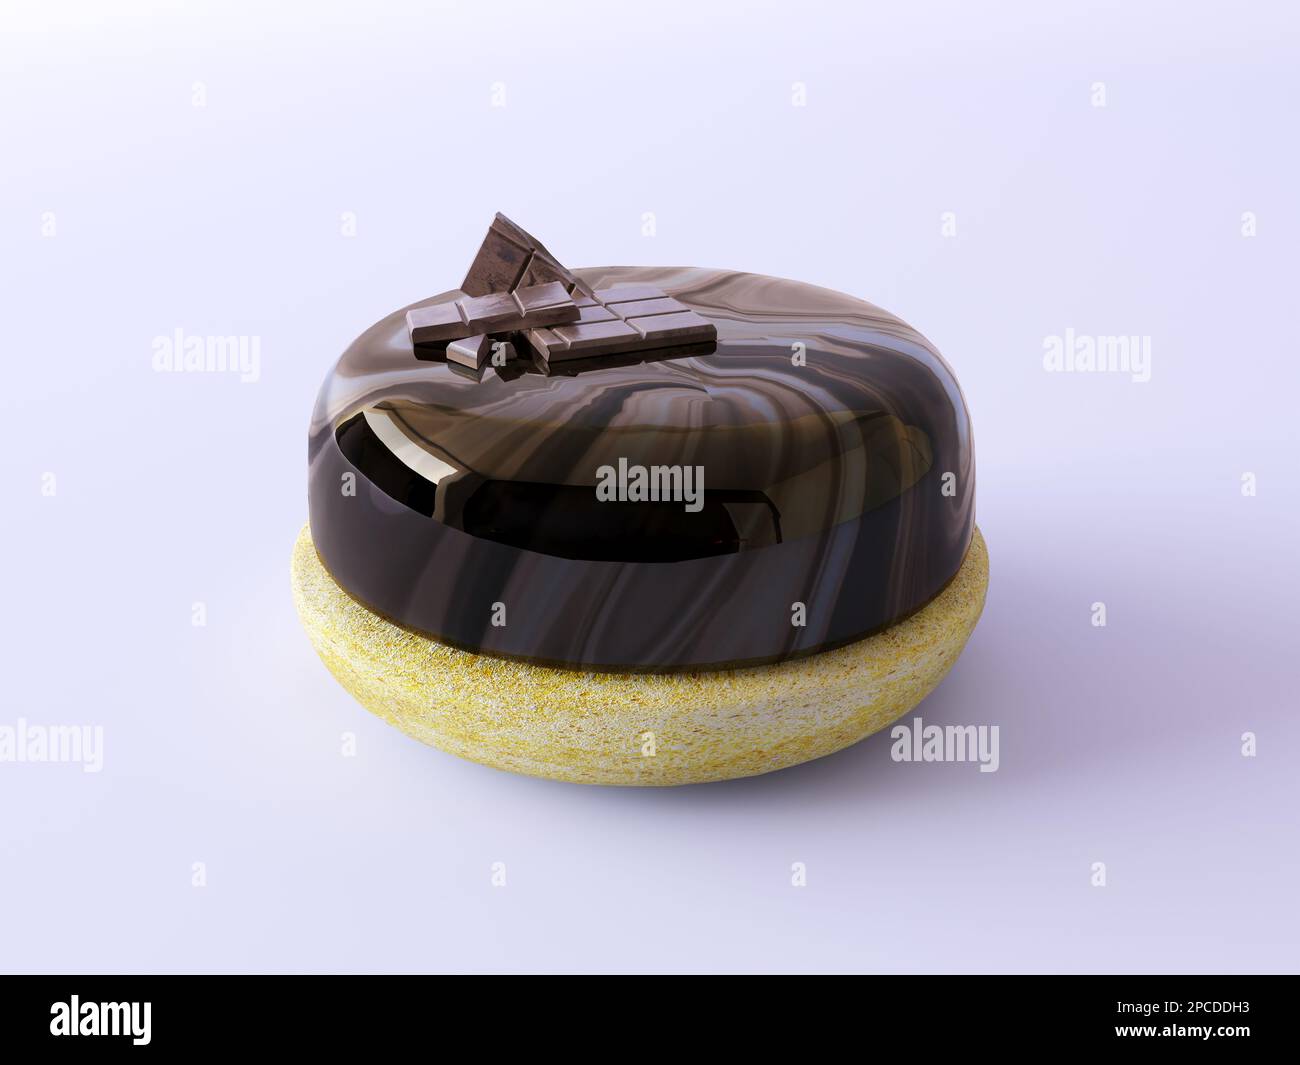 Runde, dunkle Schokoladenkuchen mit Spiegelglasur und einem zerbrochenen Schokoriegel. Köstlicher luxuriöser Kuchen, isoliert auf einem pastellfarbenen, flachen Hintergrund. Stockfoto